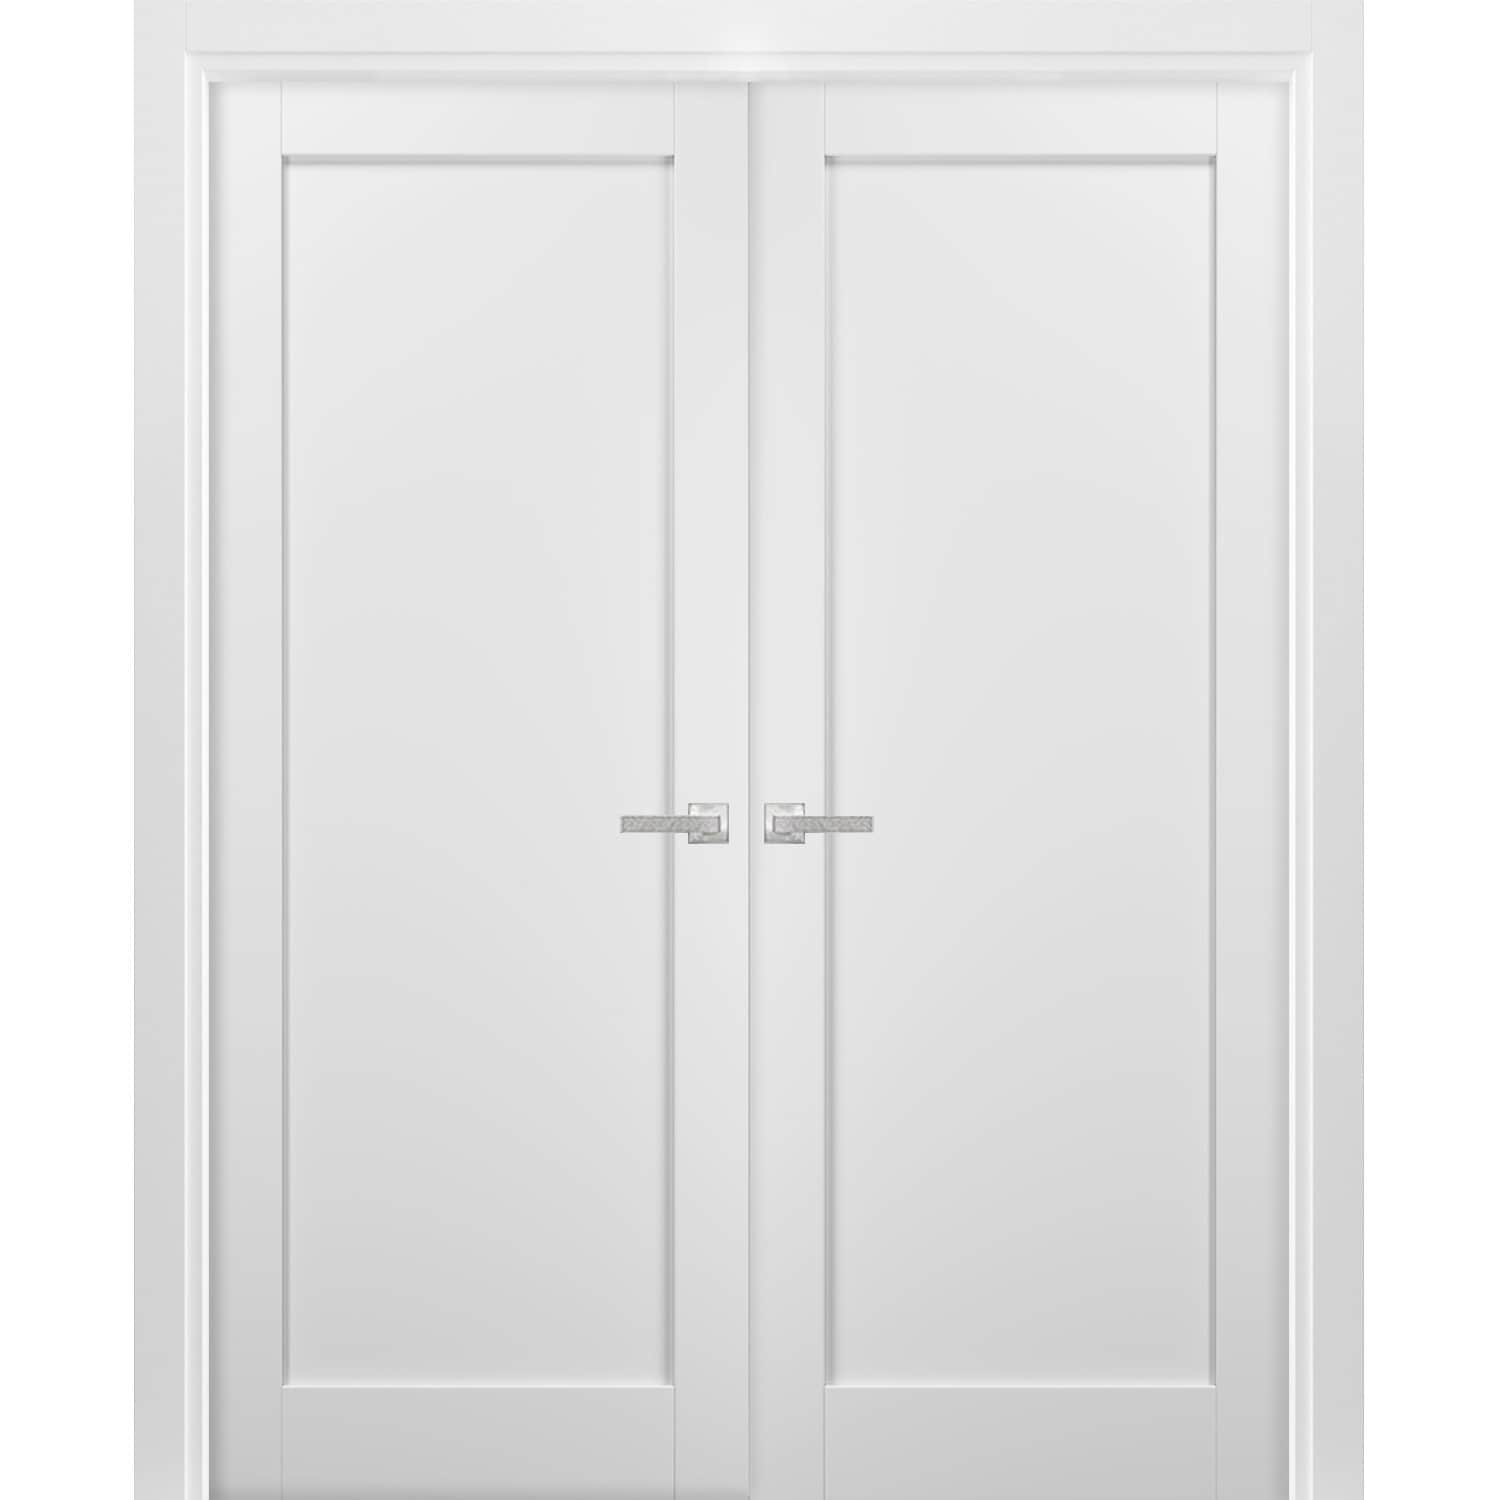  DIYHD 48 Ceiling Mount Bypass Sliding Door Hardware,Silver Box  Rail Pocket Door Wardrobe Closet Door Kit,No Door : Tools & Home Improvement